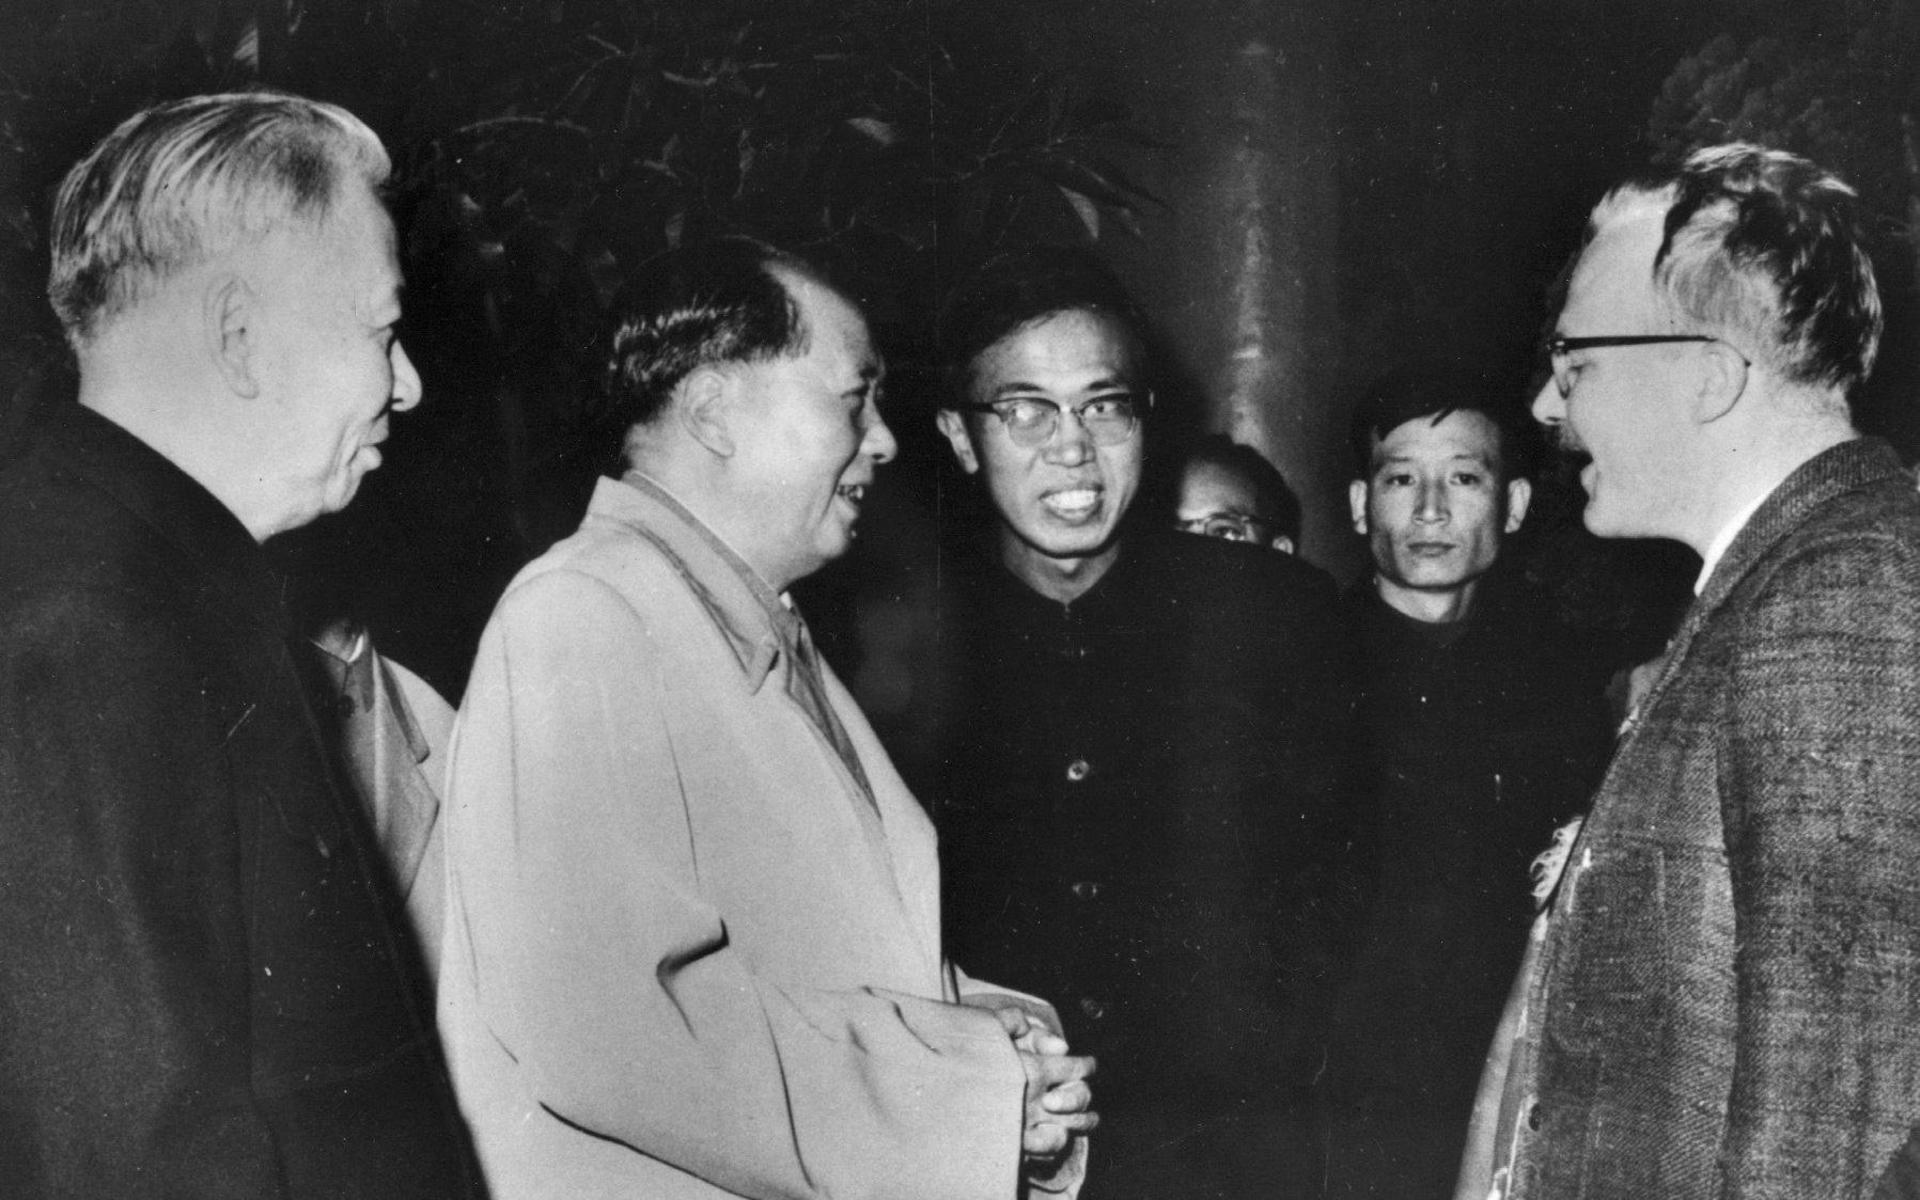 I februari 1967 träffade Jan Myrdal Mao under ett besök i Kina. Hans bok ”Rapport från kinesisk by” från 1963 blev hans genombrott och har översatt till ett flertal språk. Det är en dokumentär reportagebok från den lilla byn Liu Lin i Shaanxi-provinsen i Kina.